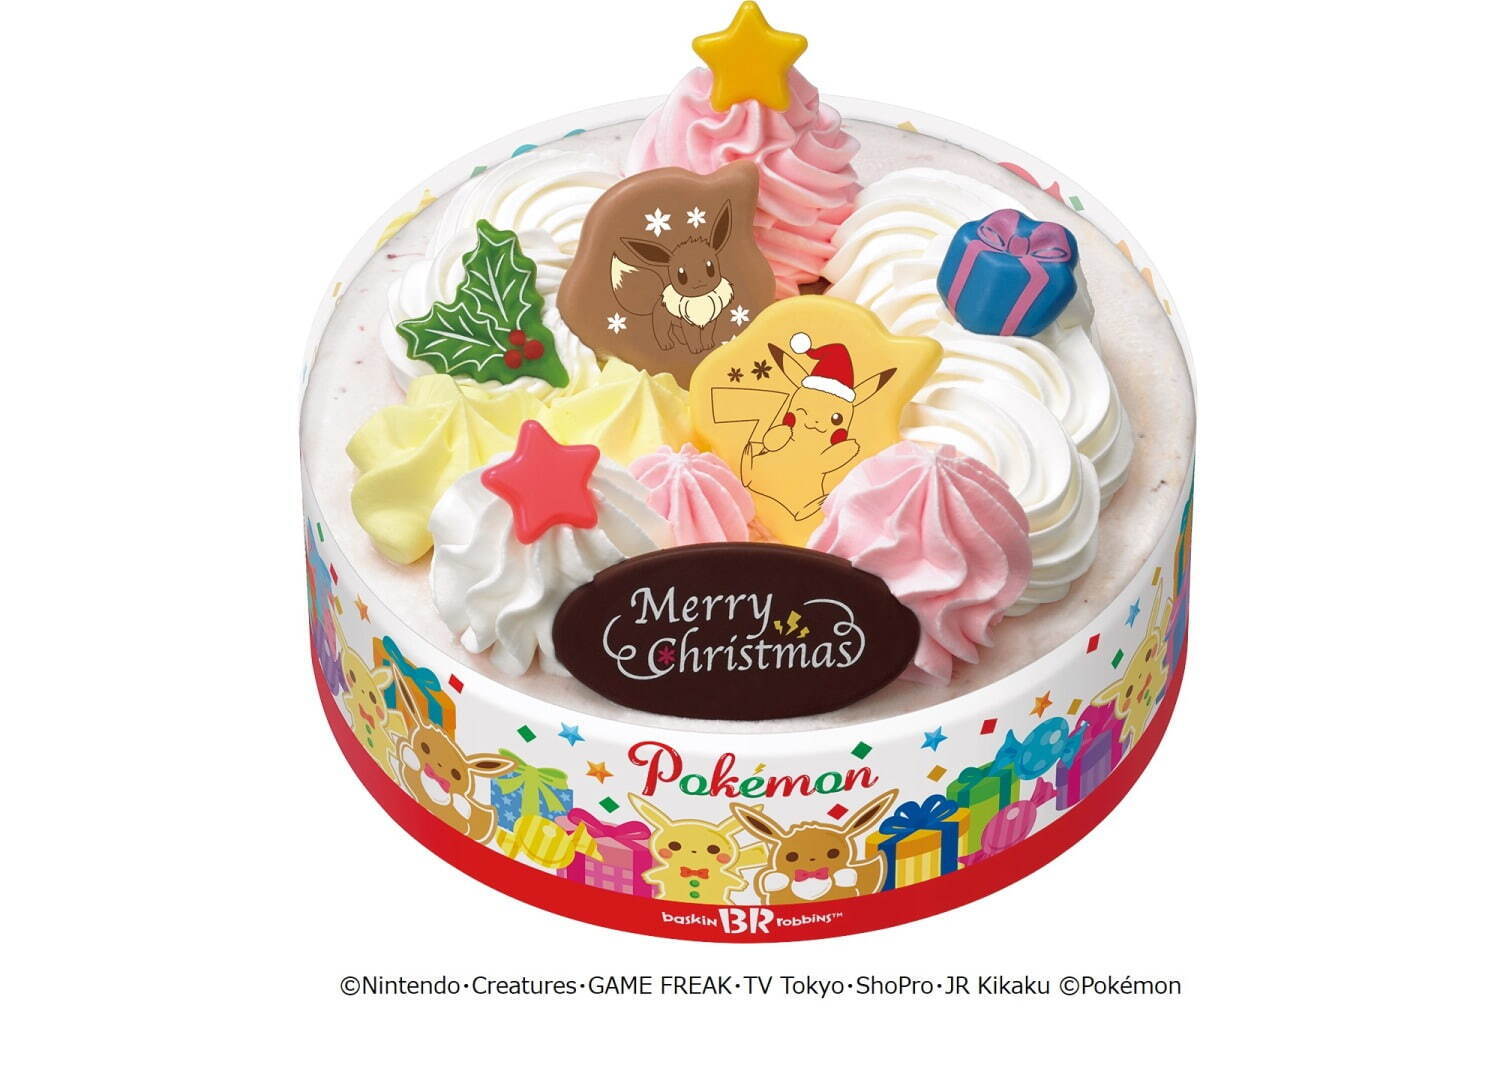 ポケモン クリスマス アイスクリームケーキ
参考価格 3,500円